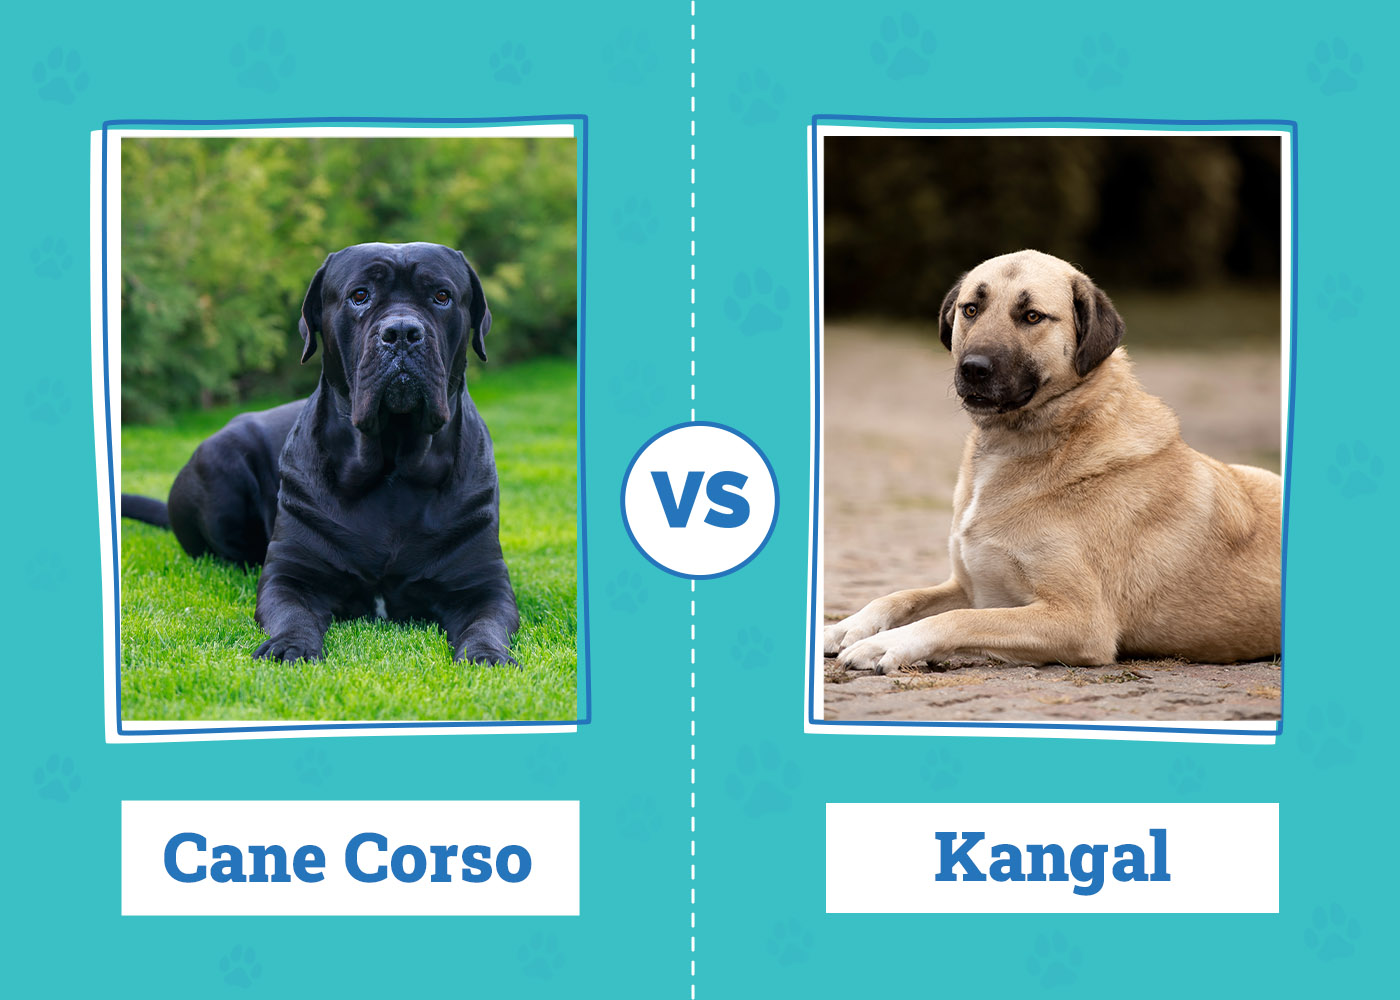 Cane Corso vs. Kanga